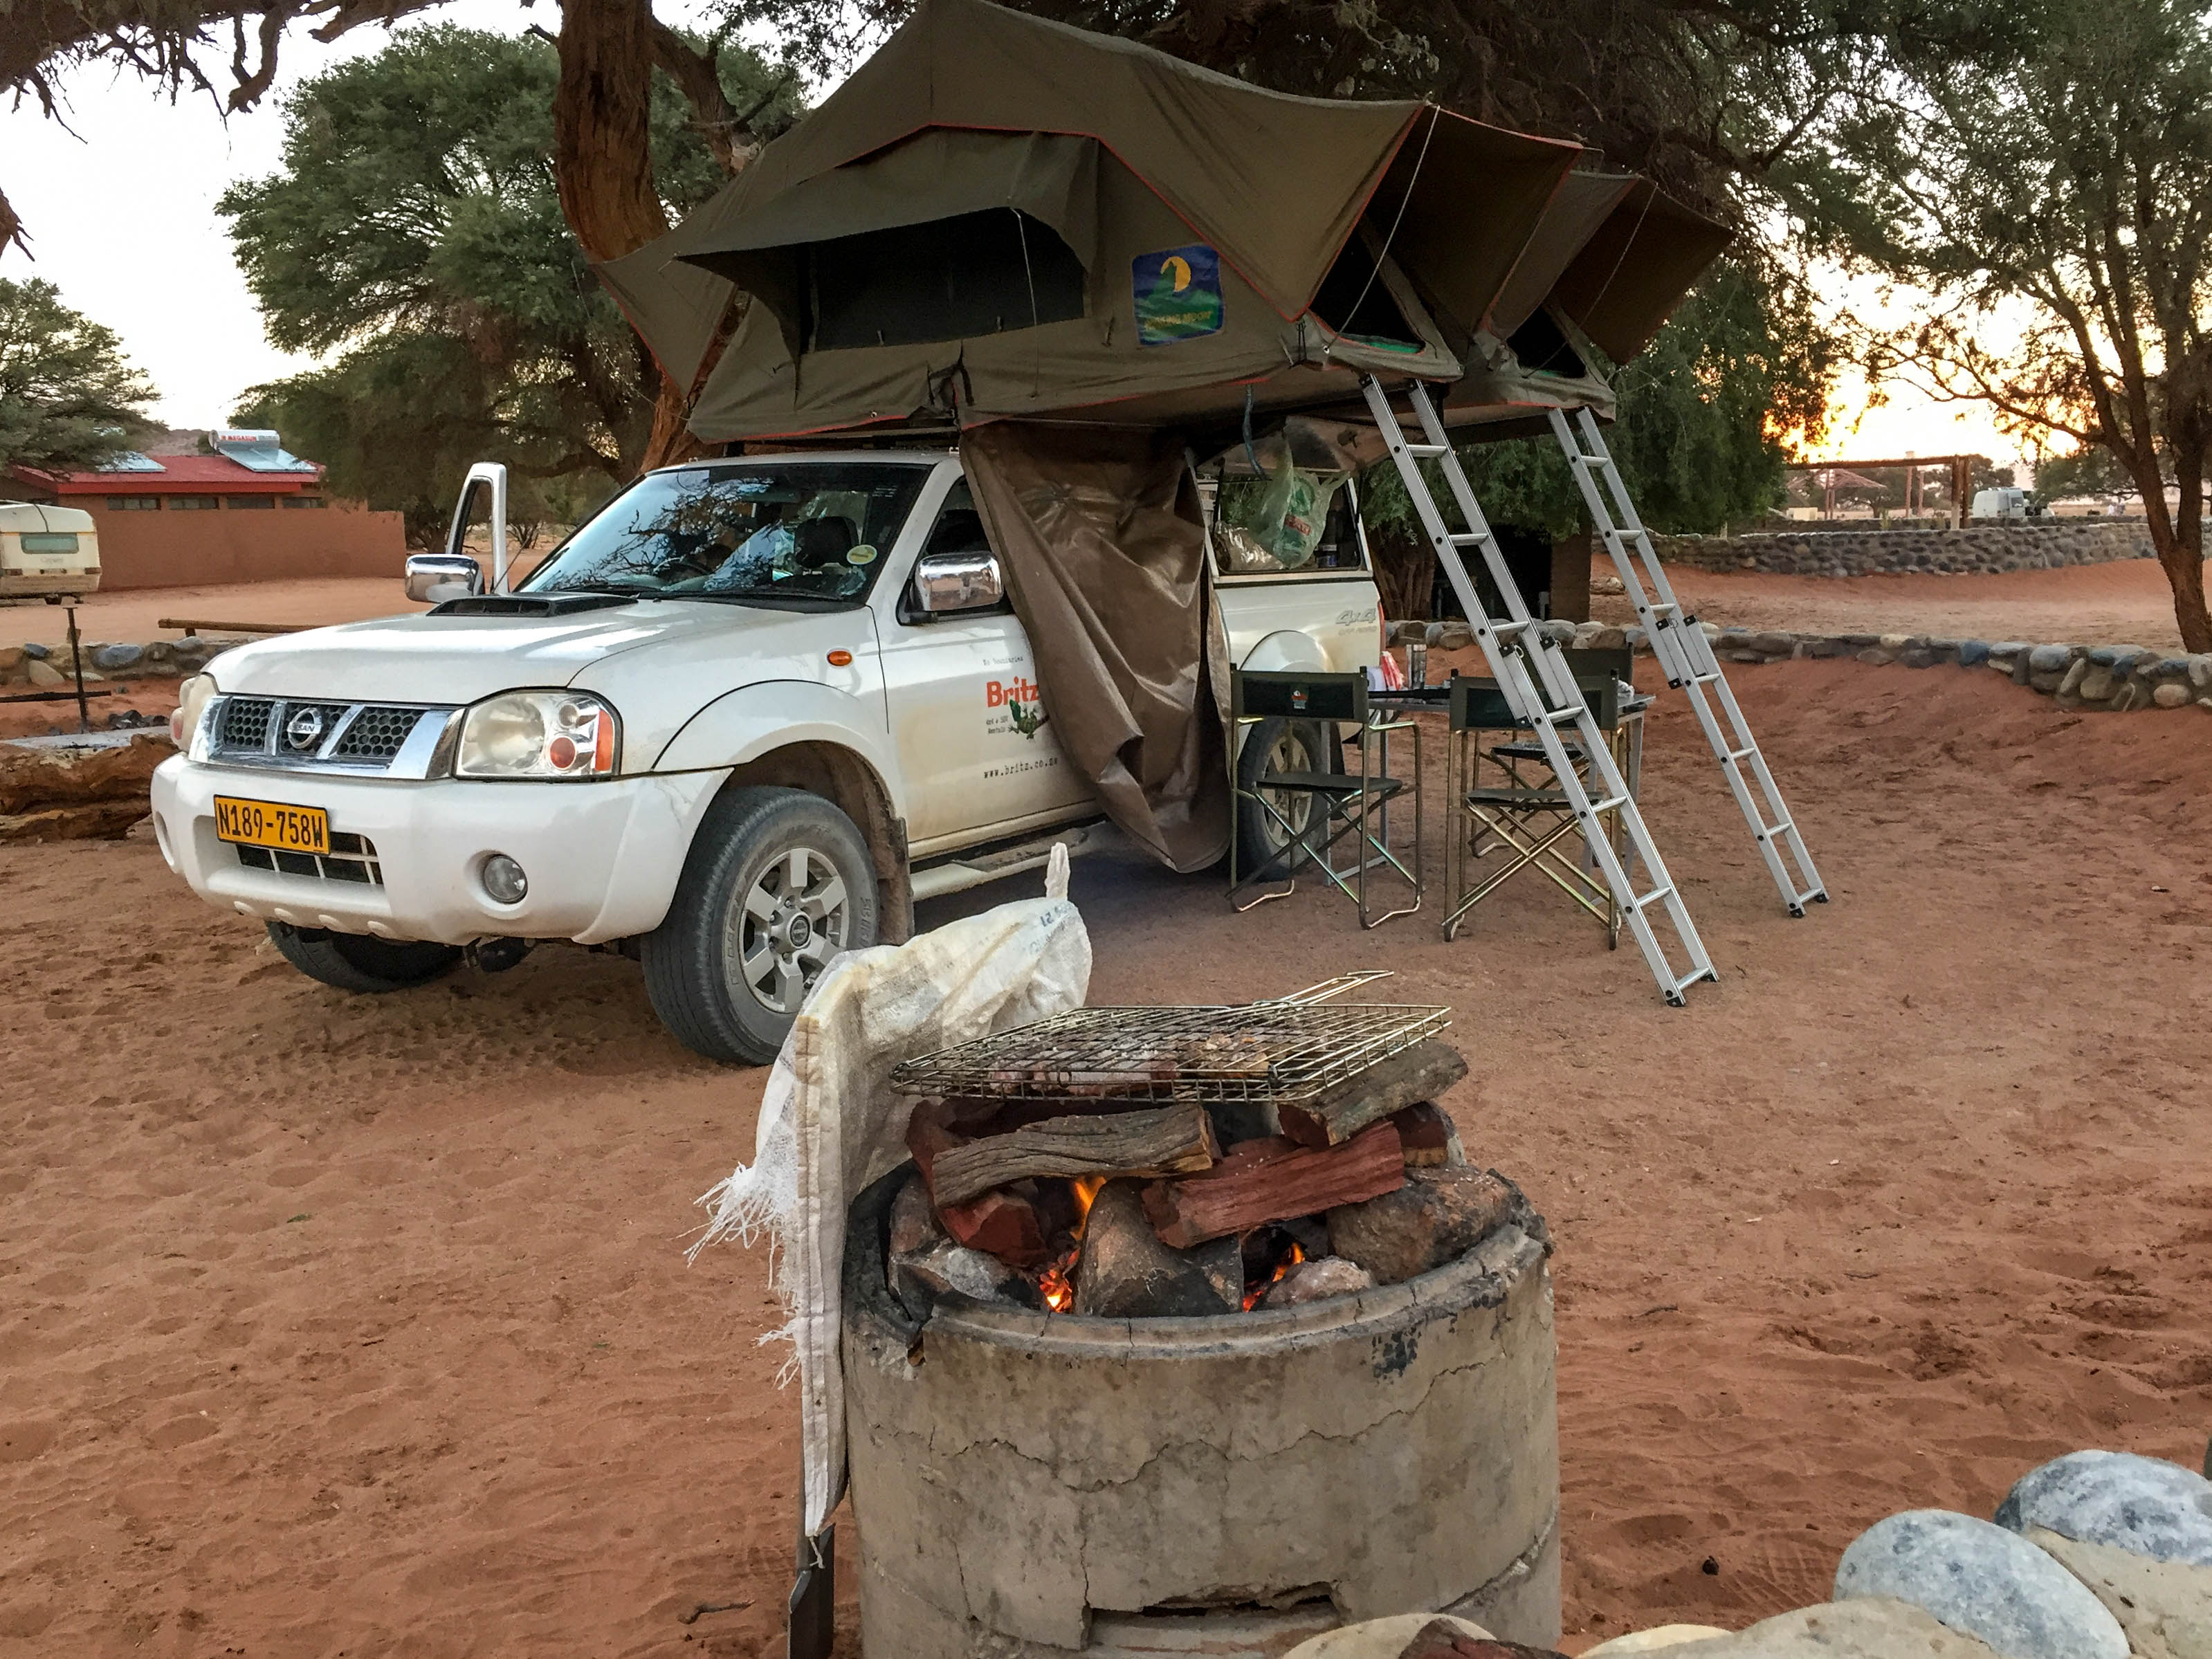 Acampamento com churrasco em sesriem, Namíbia